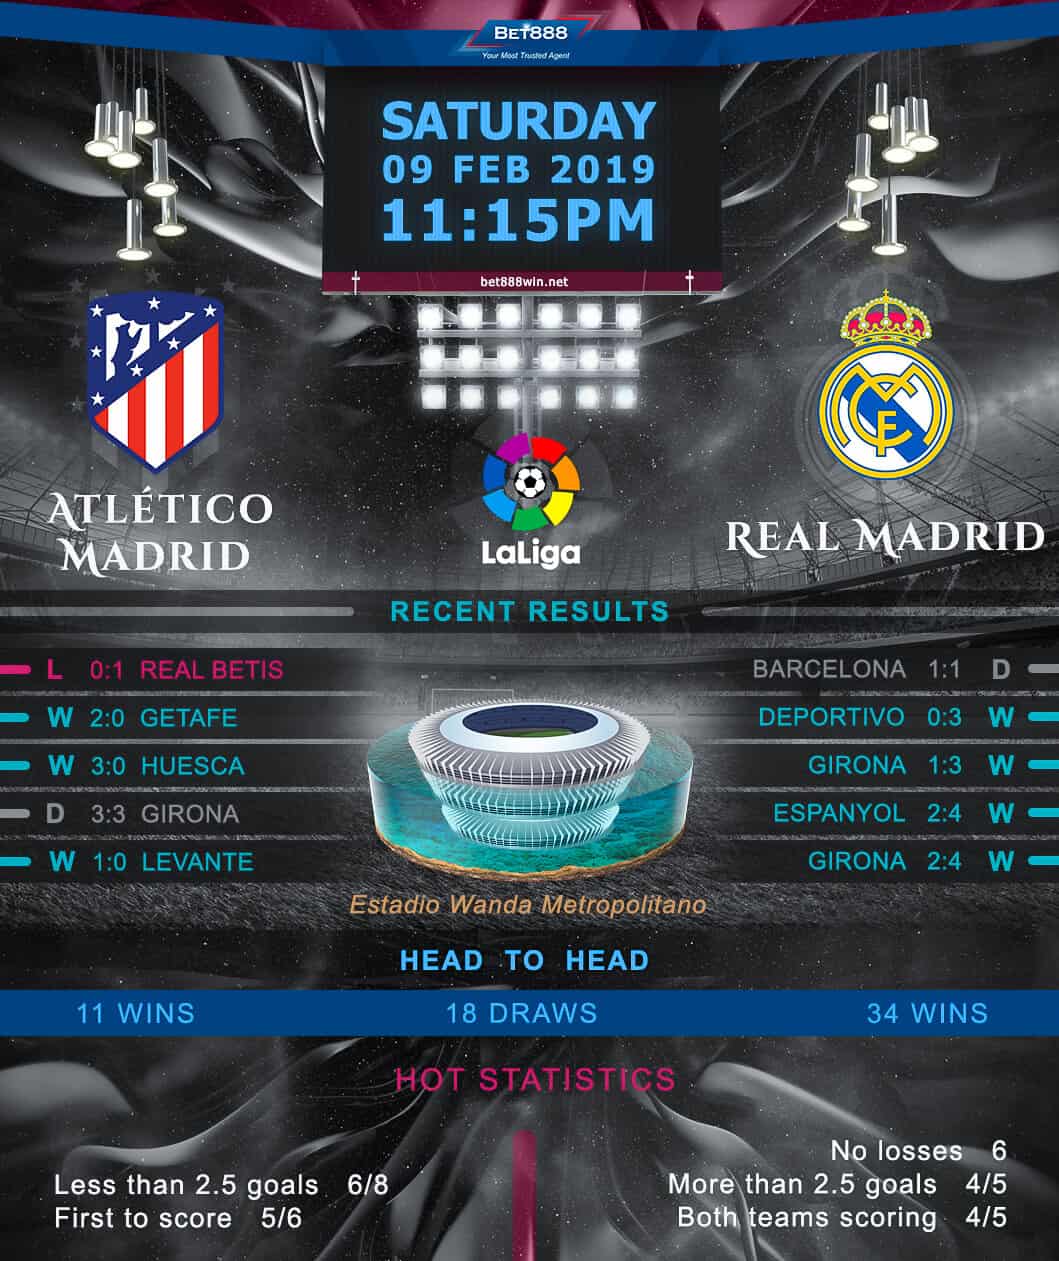 Atletico Madrid vs Real Madrid 09/02/19